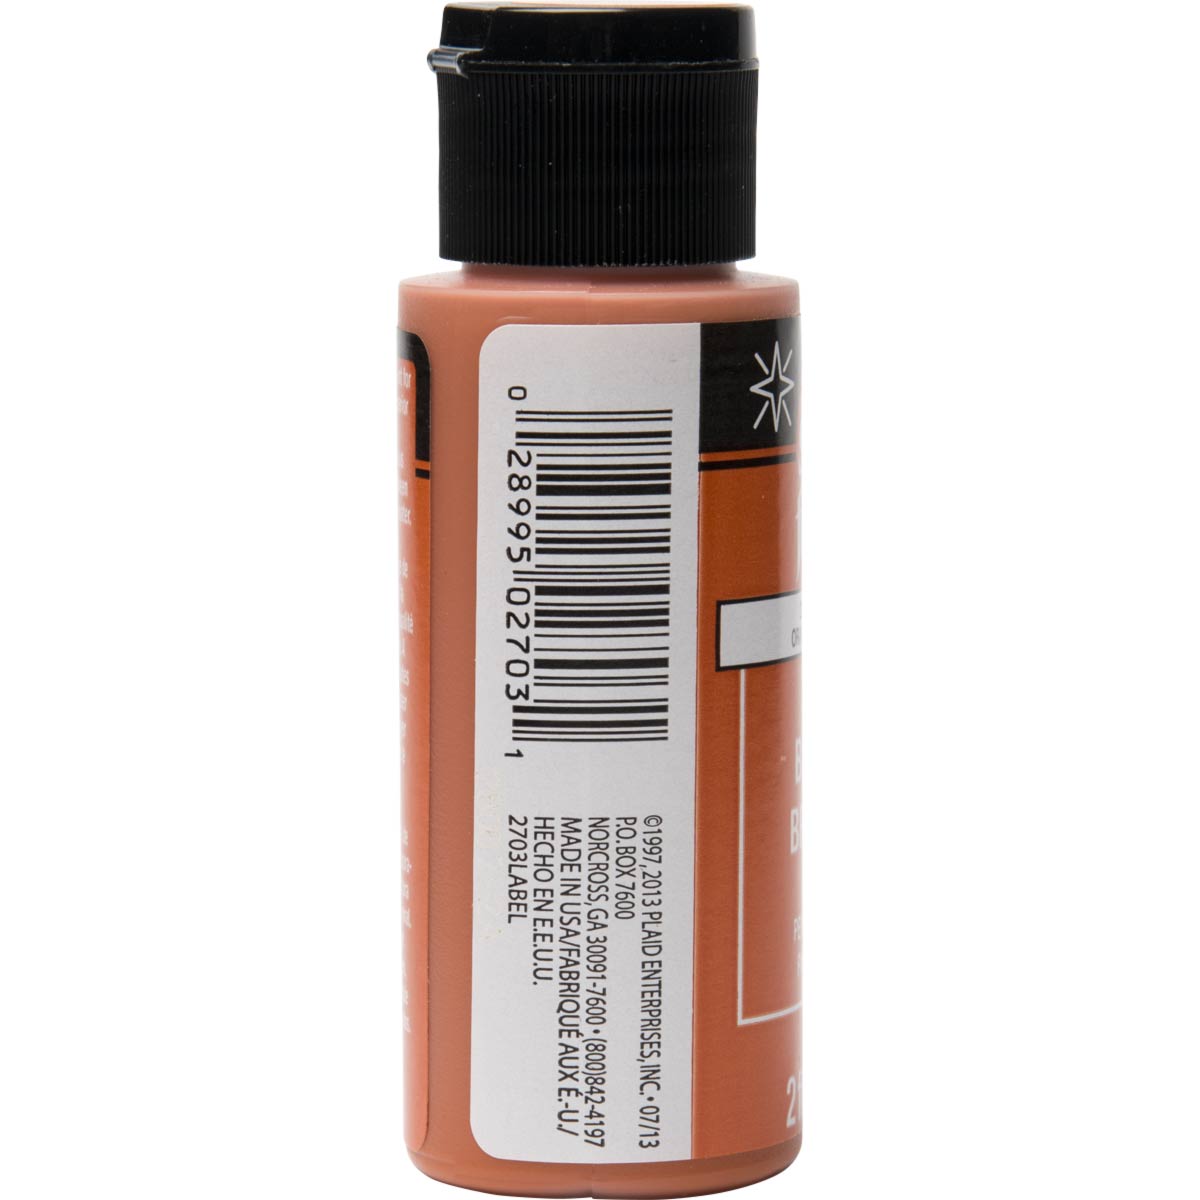 FolkArt ® Shiny™ Acrylic Paint - Pure Orange, 2 oz. - 2703